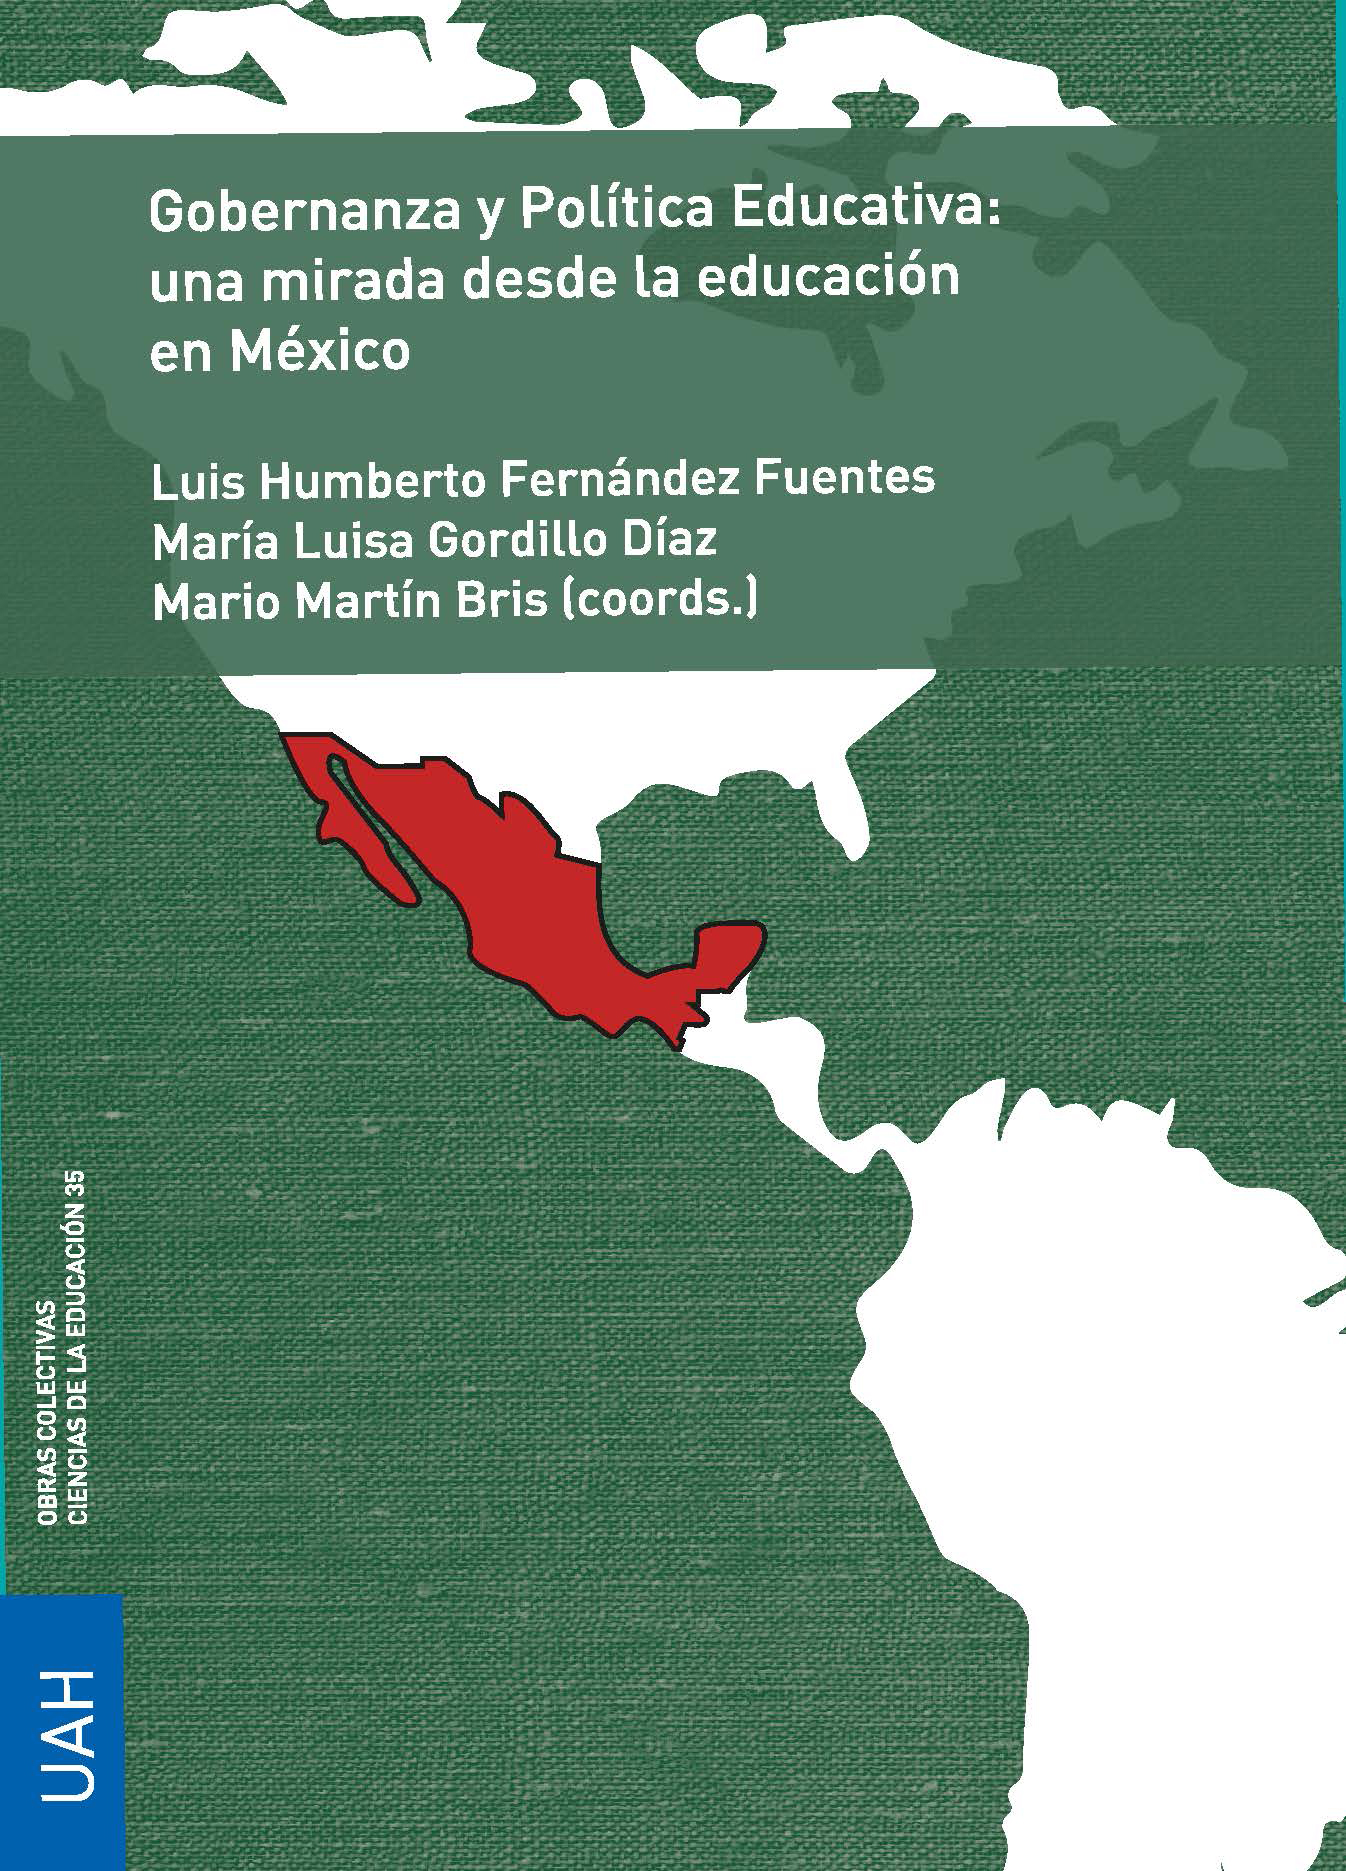 Gobernanza y Política Educativa: una mirada desde la educación en México